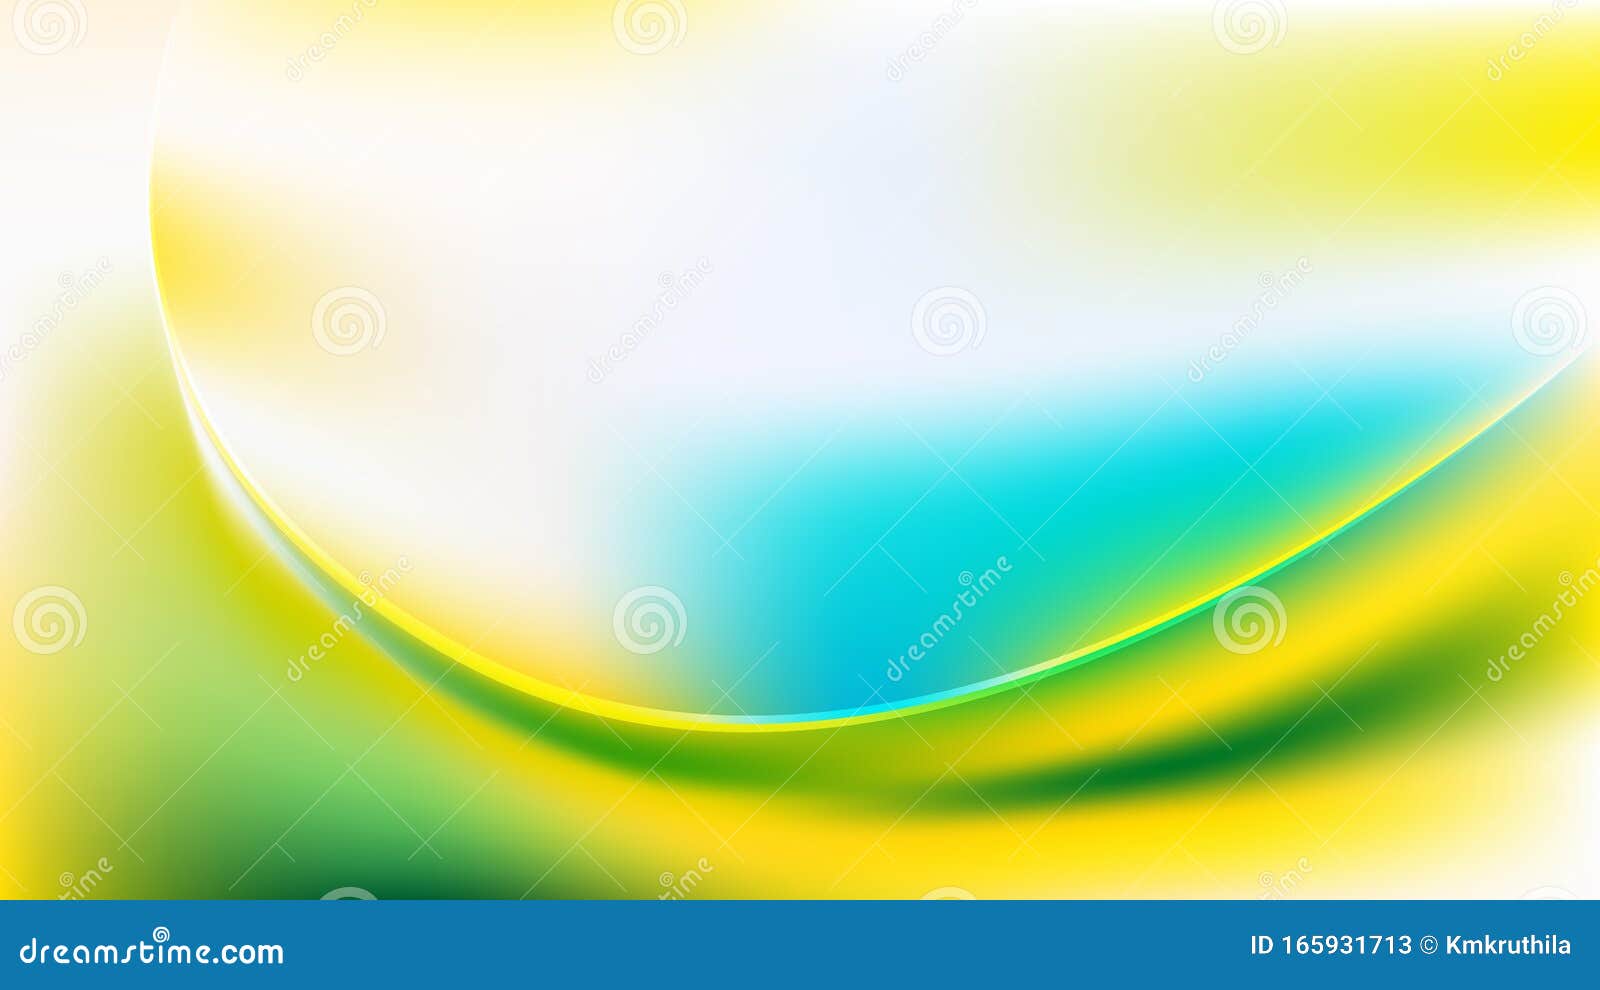 Mẫu đồ họa nền sóng trừu tượng màu xanh dương, xanh lá cây và màu vàng là một lựa chọn hoàn hảo cho những người muốn dùng hình nền độc đáo và thu hút. Với những đường sóng trừu tượng đầy màu sắc, bức ảnh này sẽ khiến cho bạn cảm thấy như đang đứng trước một bức tranh nghệ thuật. Hãy để trí tưởng tượng của bạn thoả sức mơ mộng và khám phá bức ảnh này.